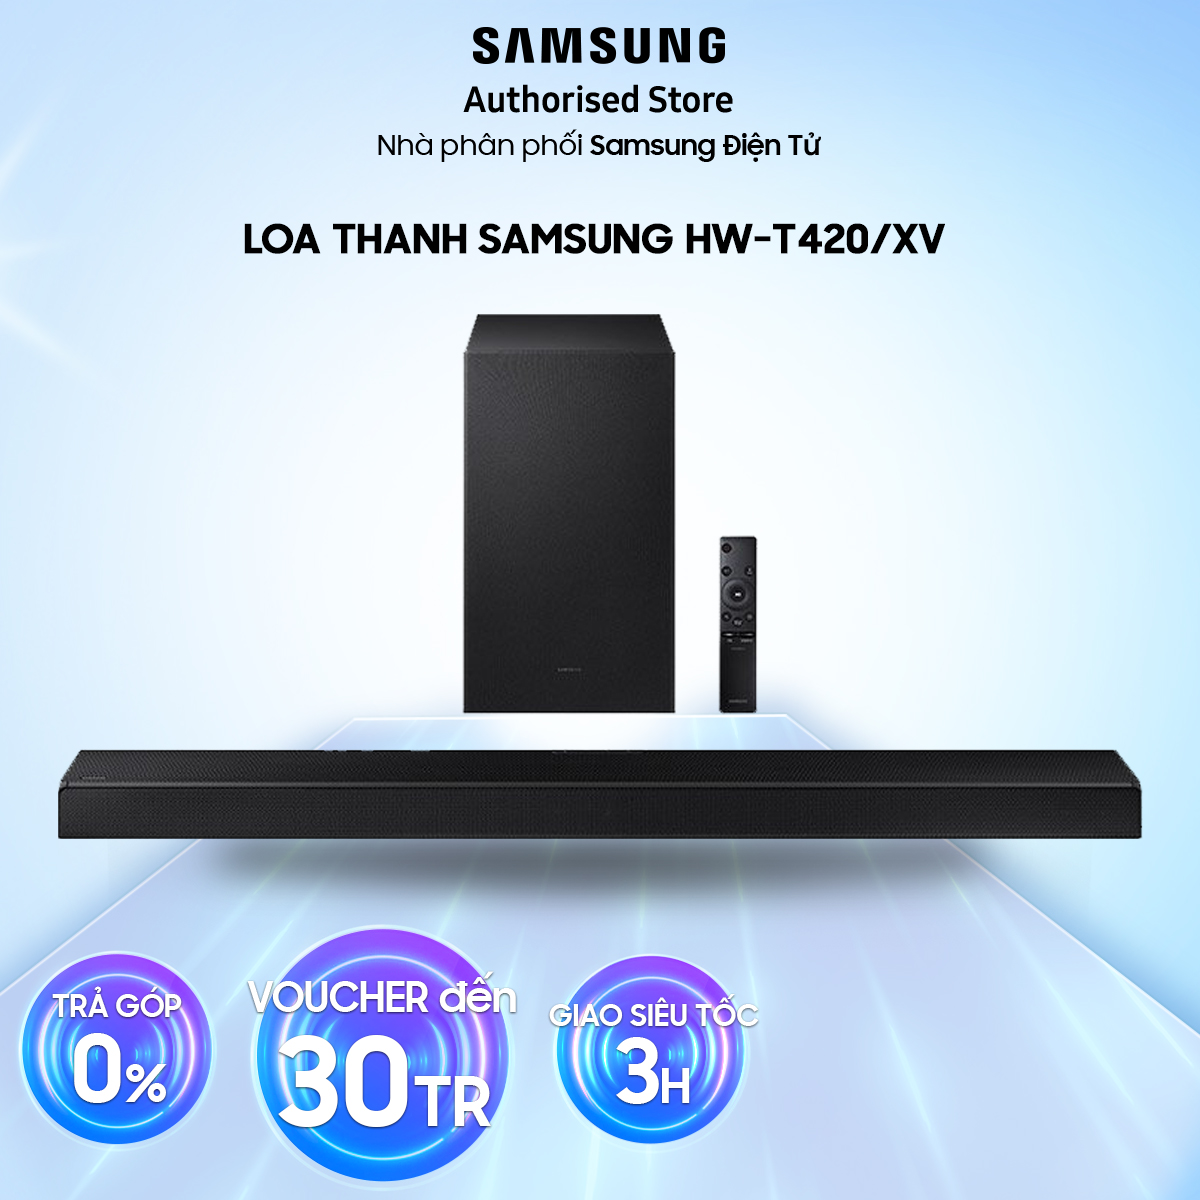 HW-T420 - Loa thanh soundbar Samsung 2.1ch 150W